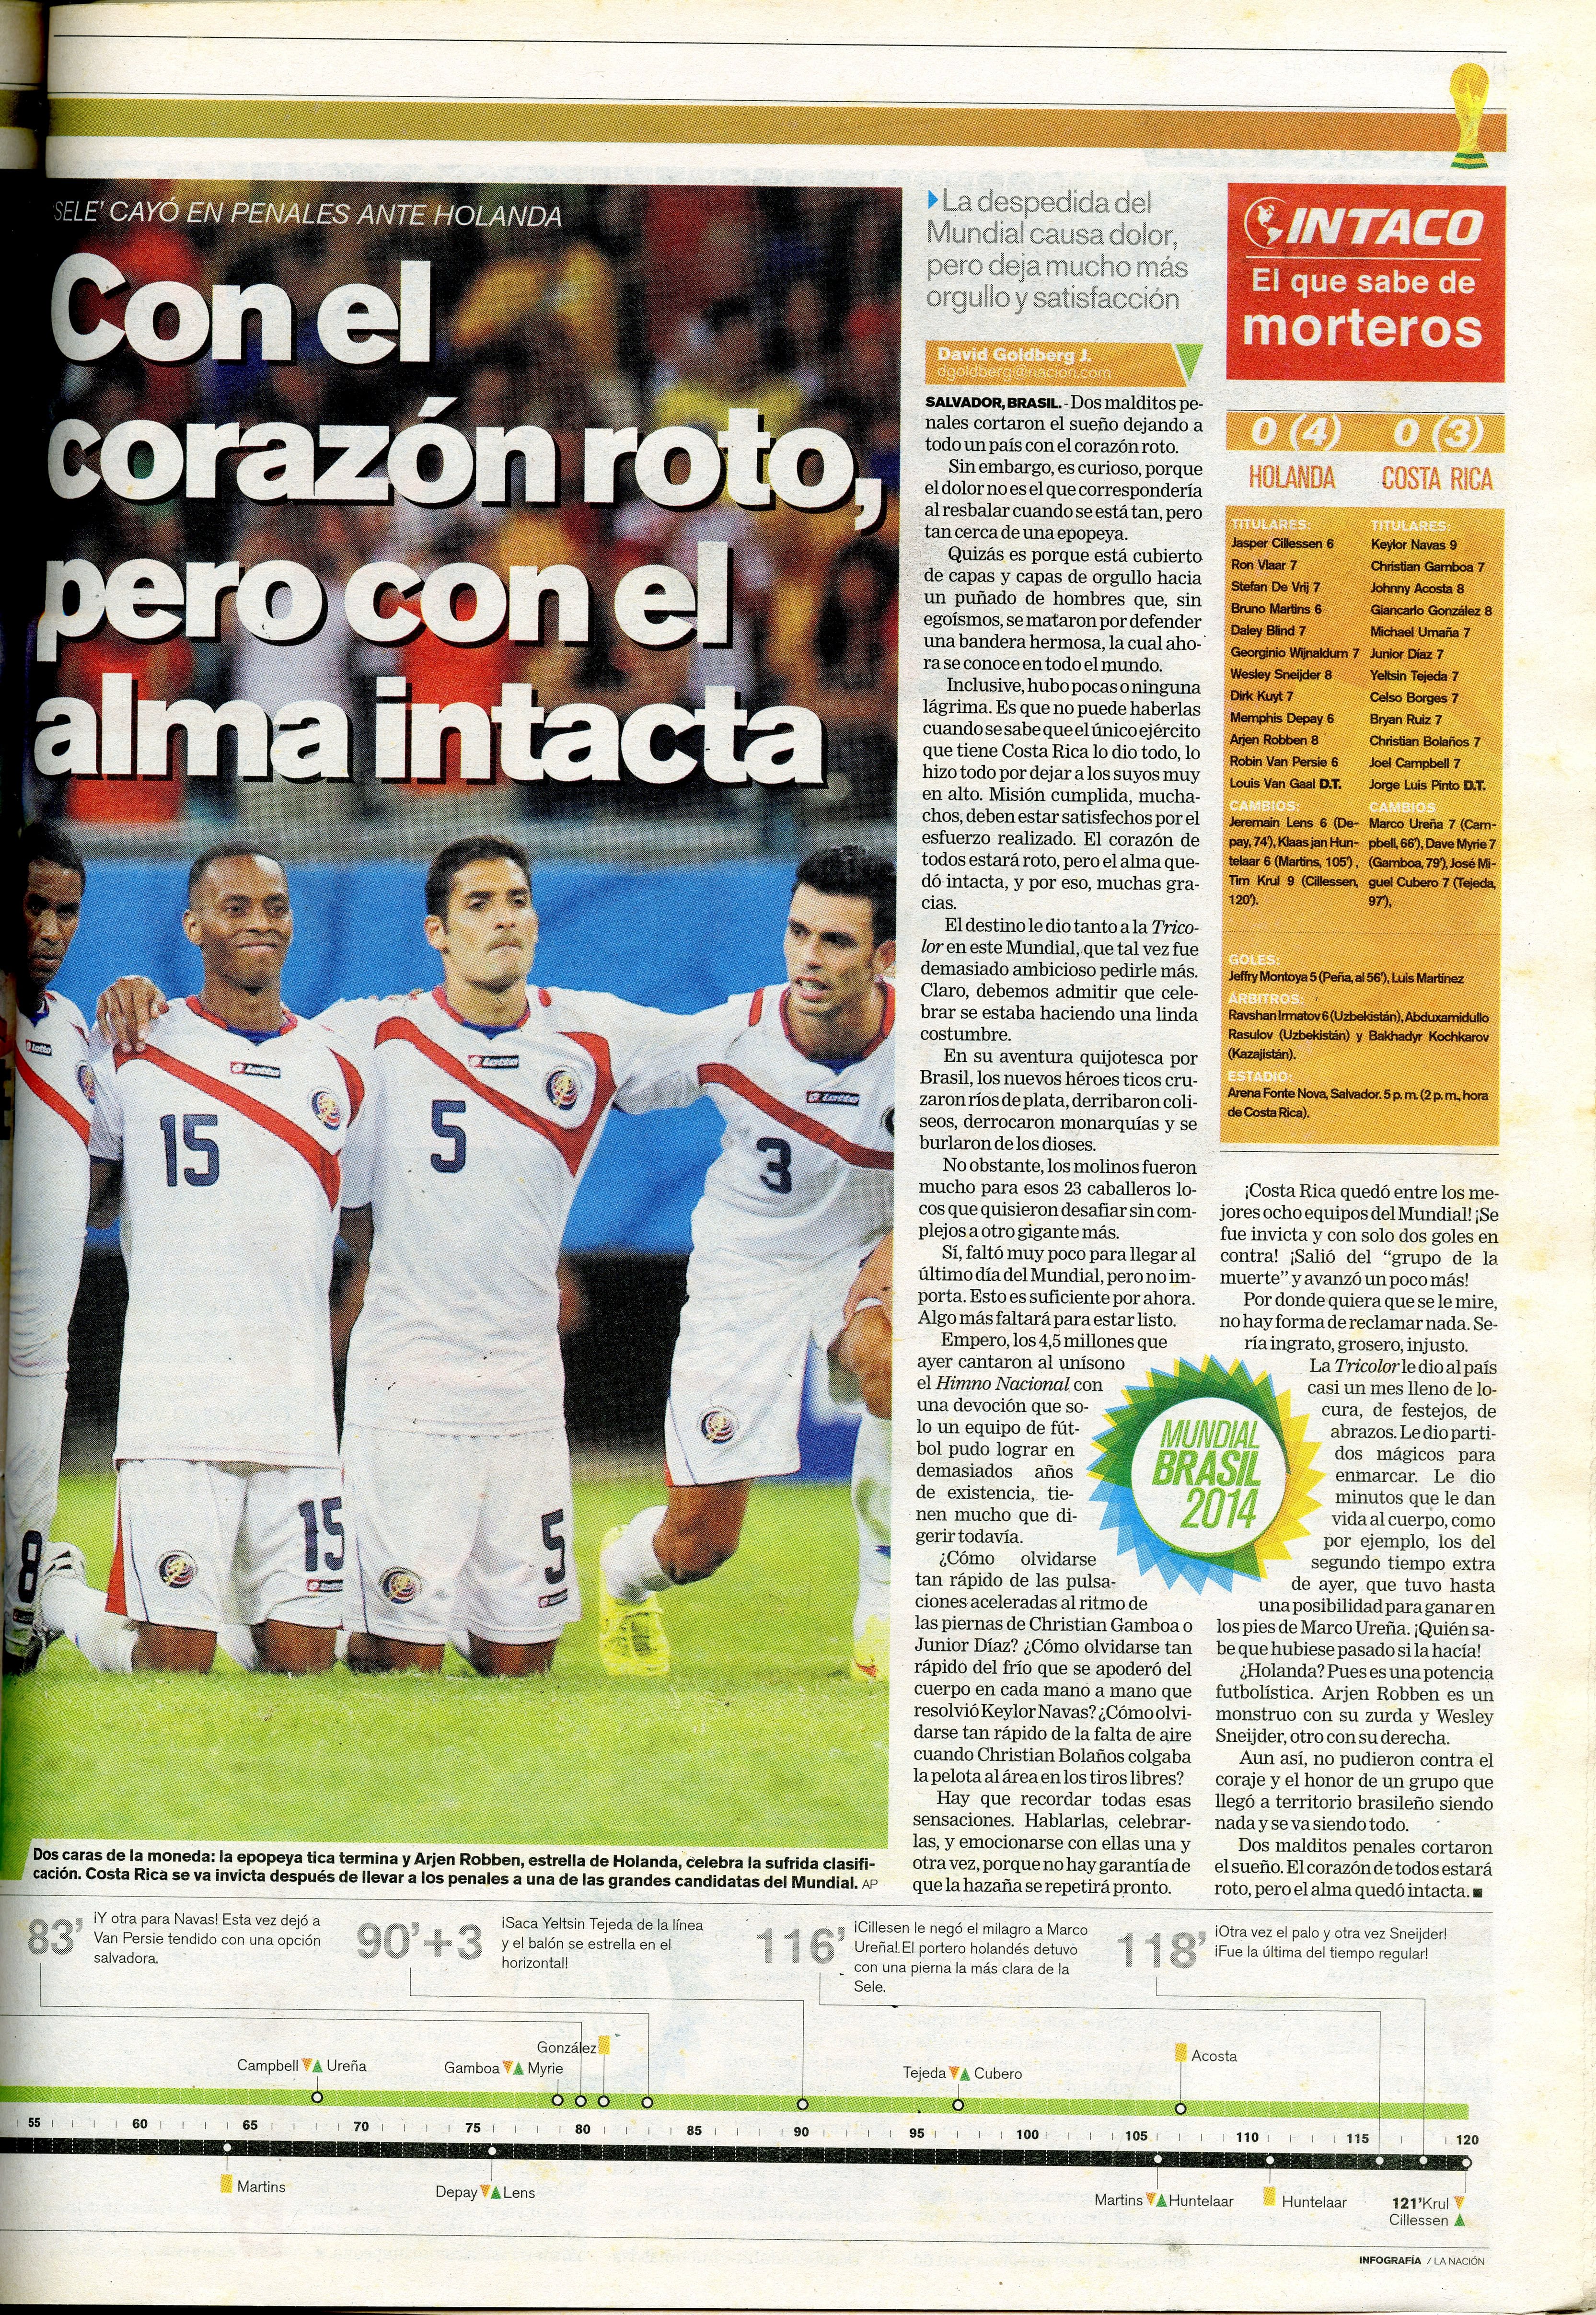 La Selección de Costa Rica hizo sufrir a Holanda, definiendo el boleto a semifinales desde los lanzamientos de penal. Fotografía: Archivo LN